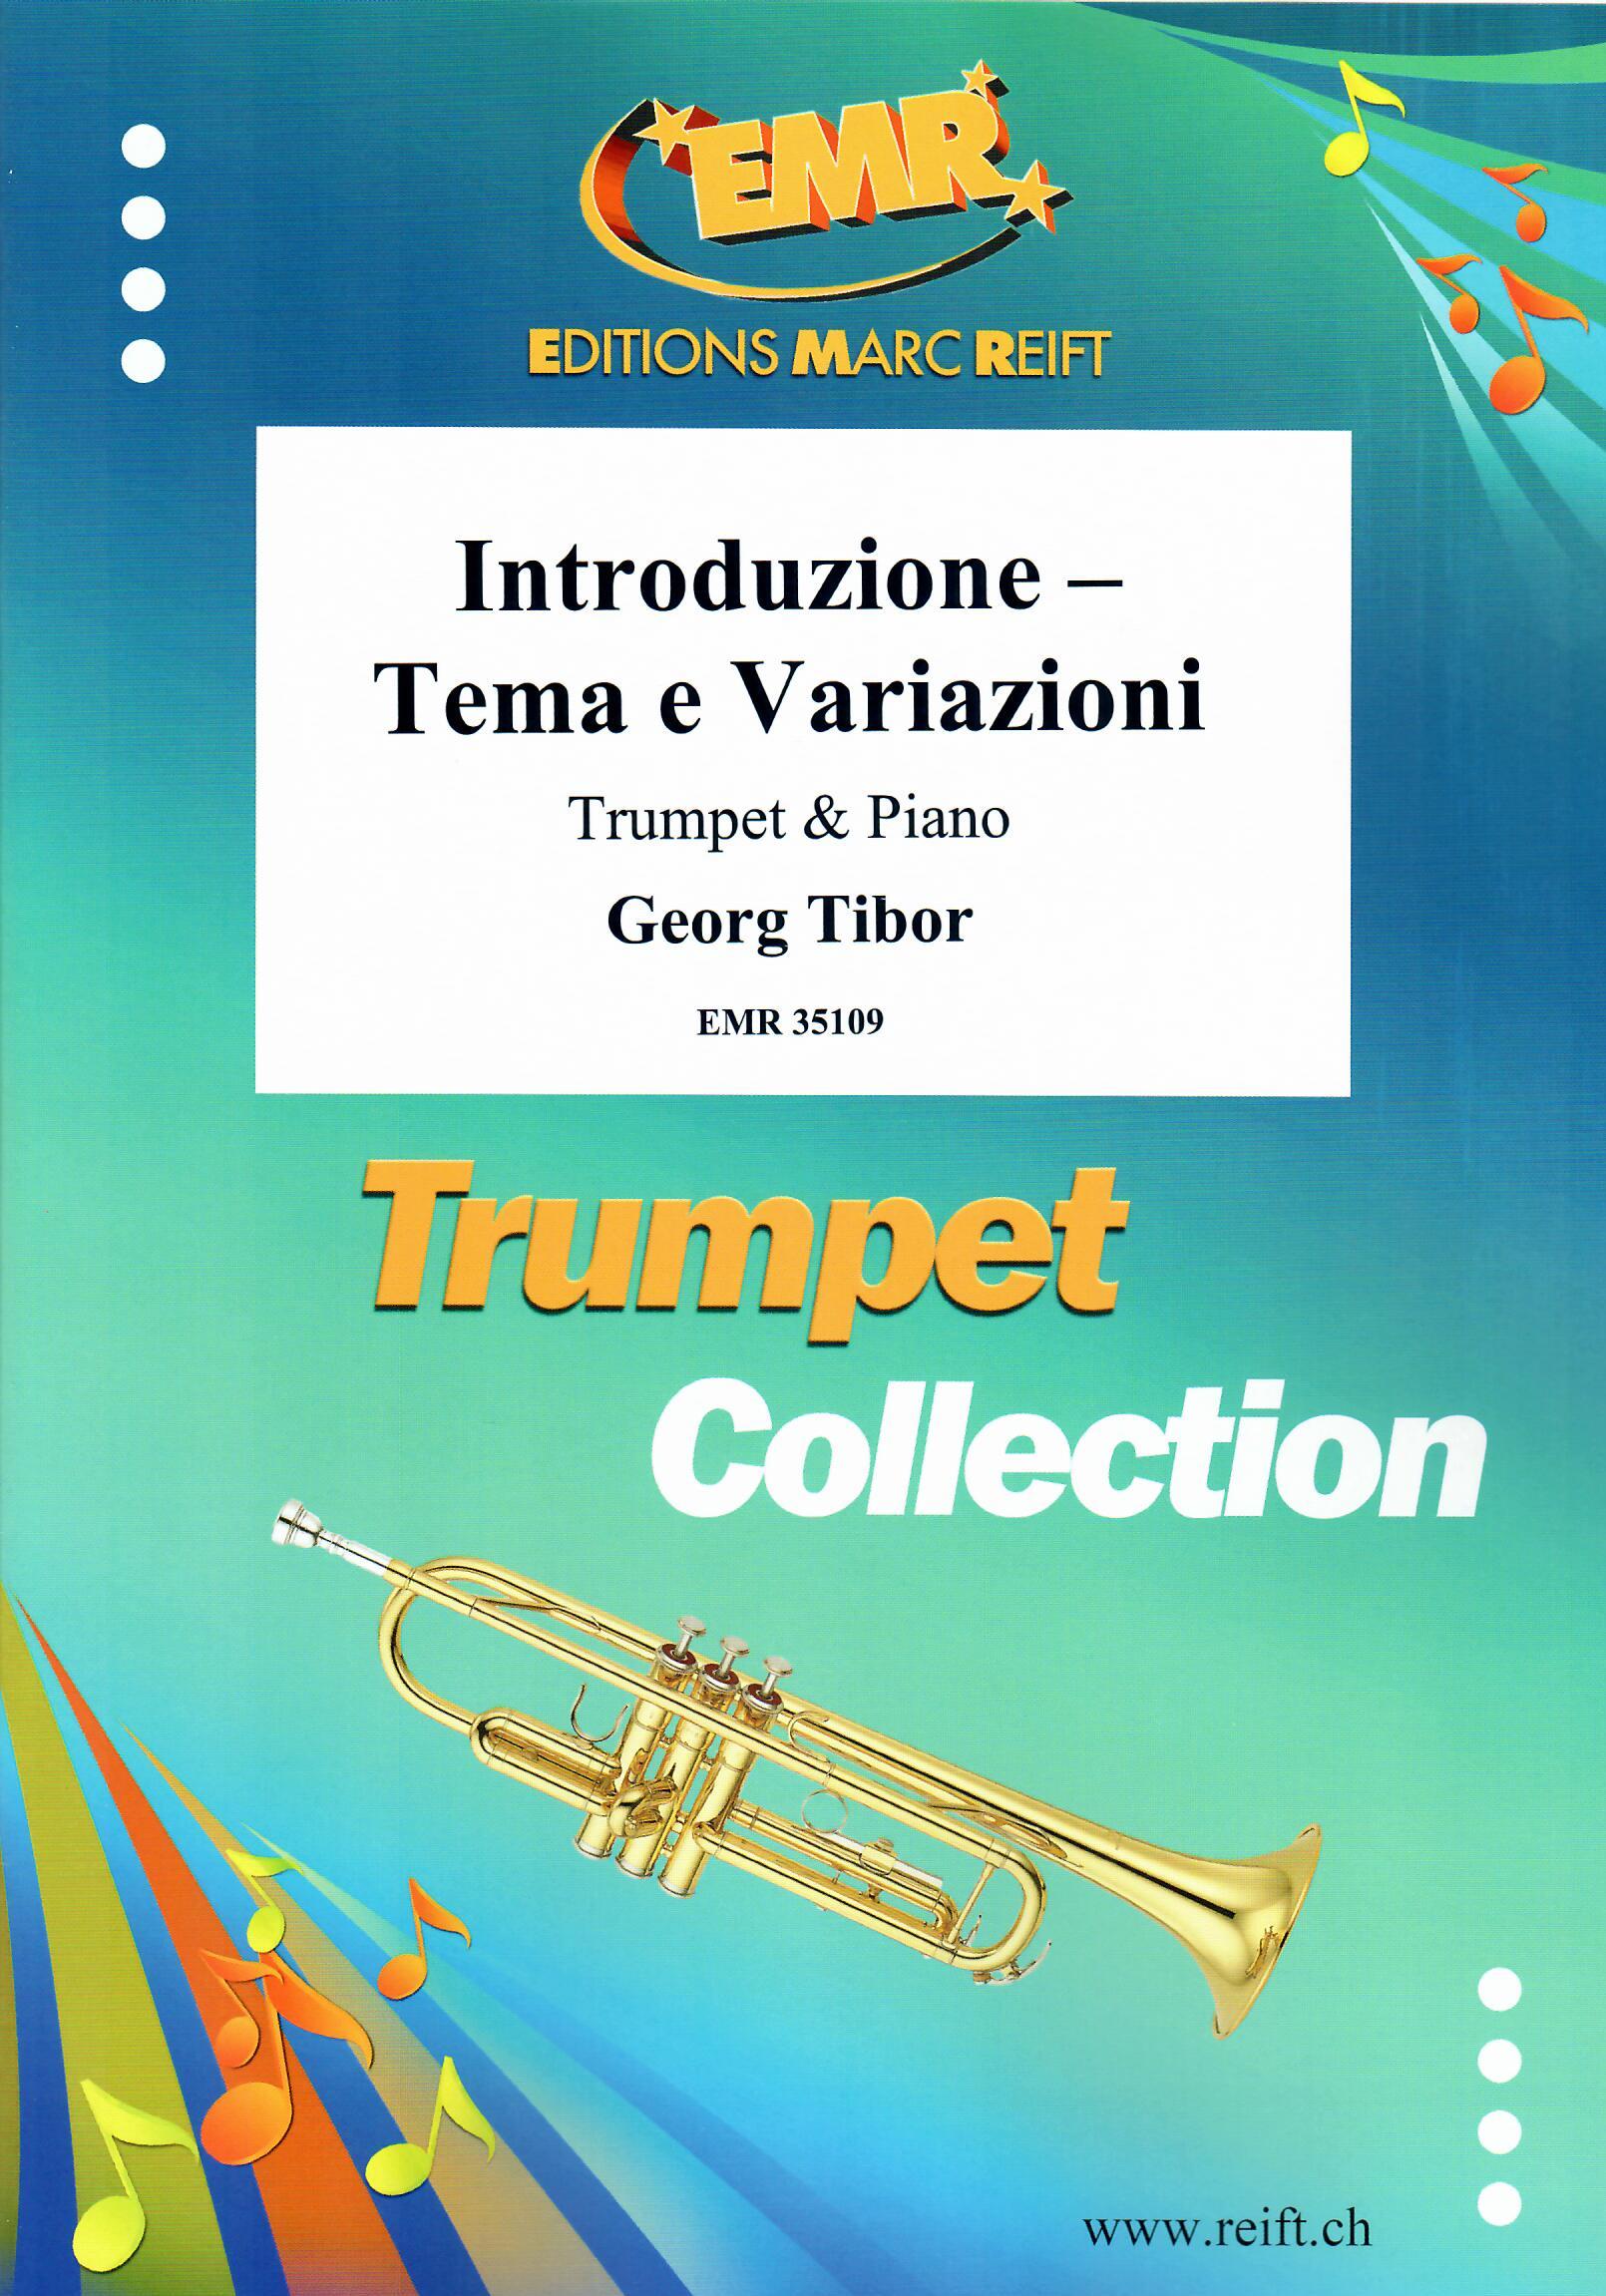 INTRODUZIONE - TEMA E VARIAZIONI, SOLOS - B♭. Cornet/Trumpet with Piano